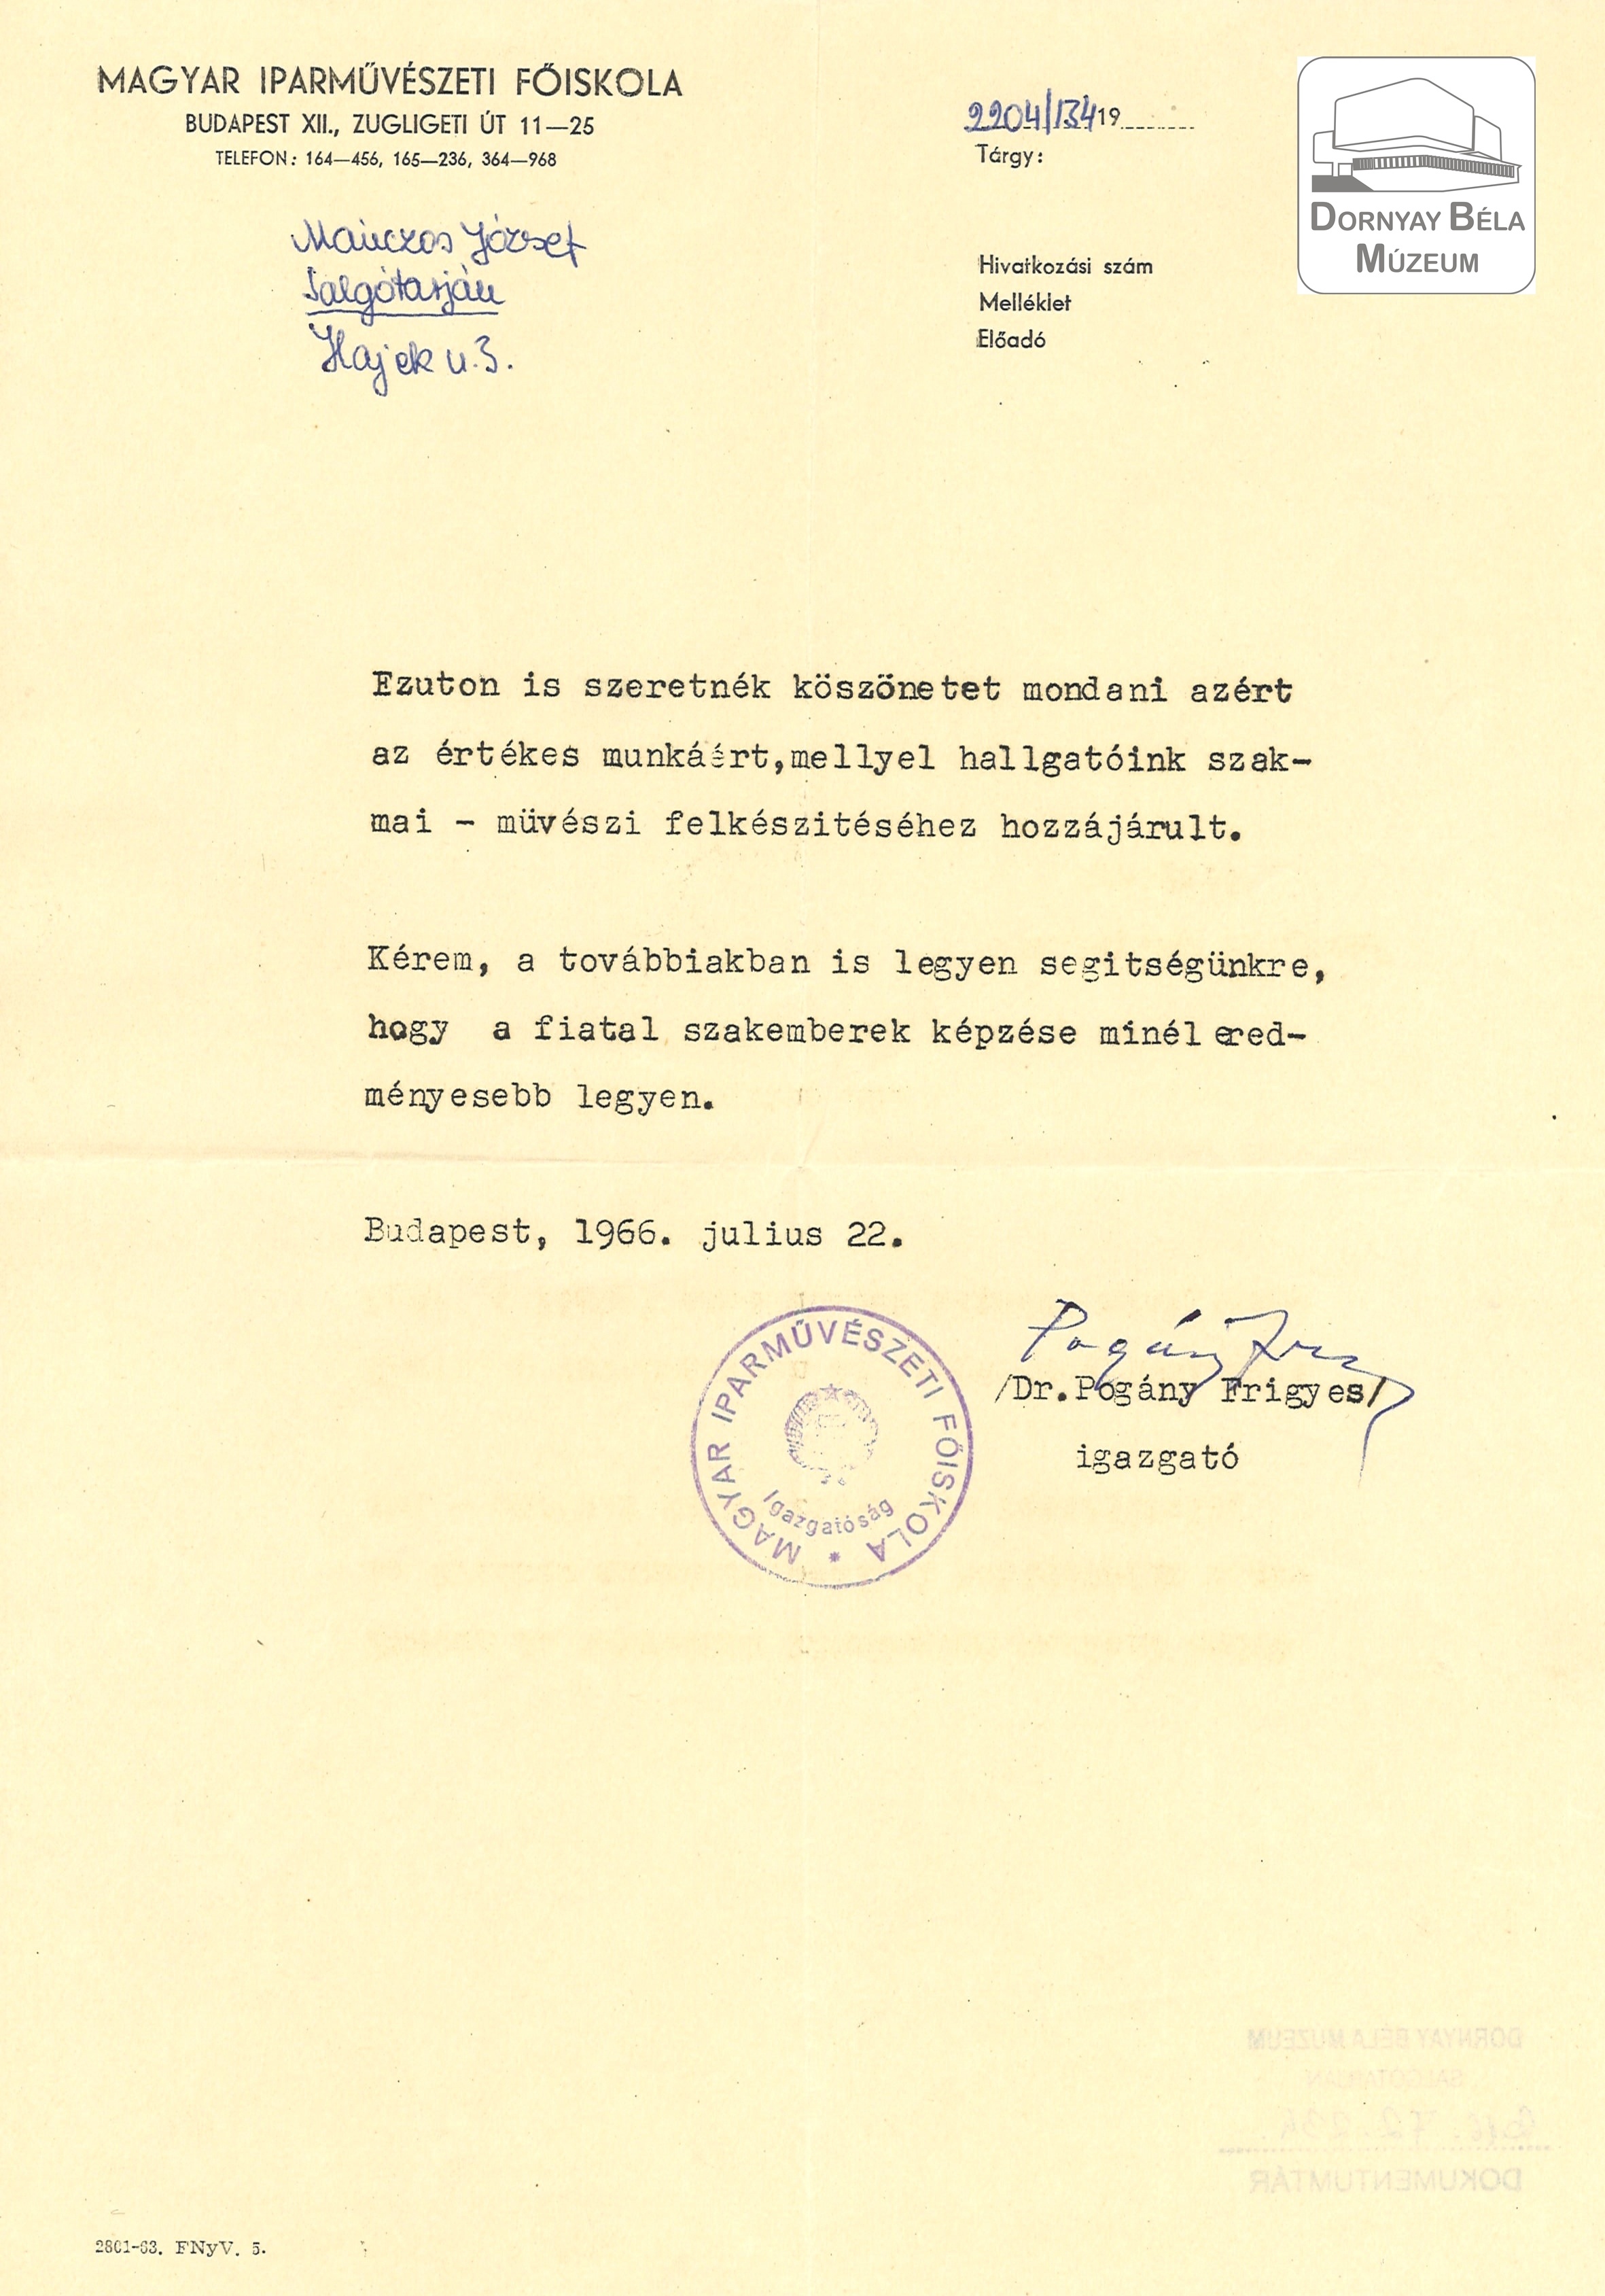 Dr. Pogány Frigyes levele (Dornyay Béla Múzeum, Salgótarján CC BY-NC-SA)